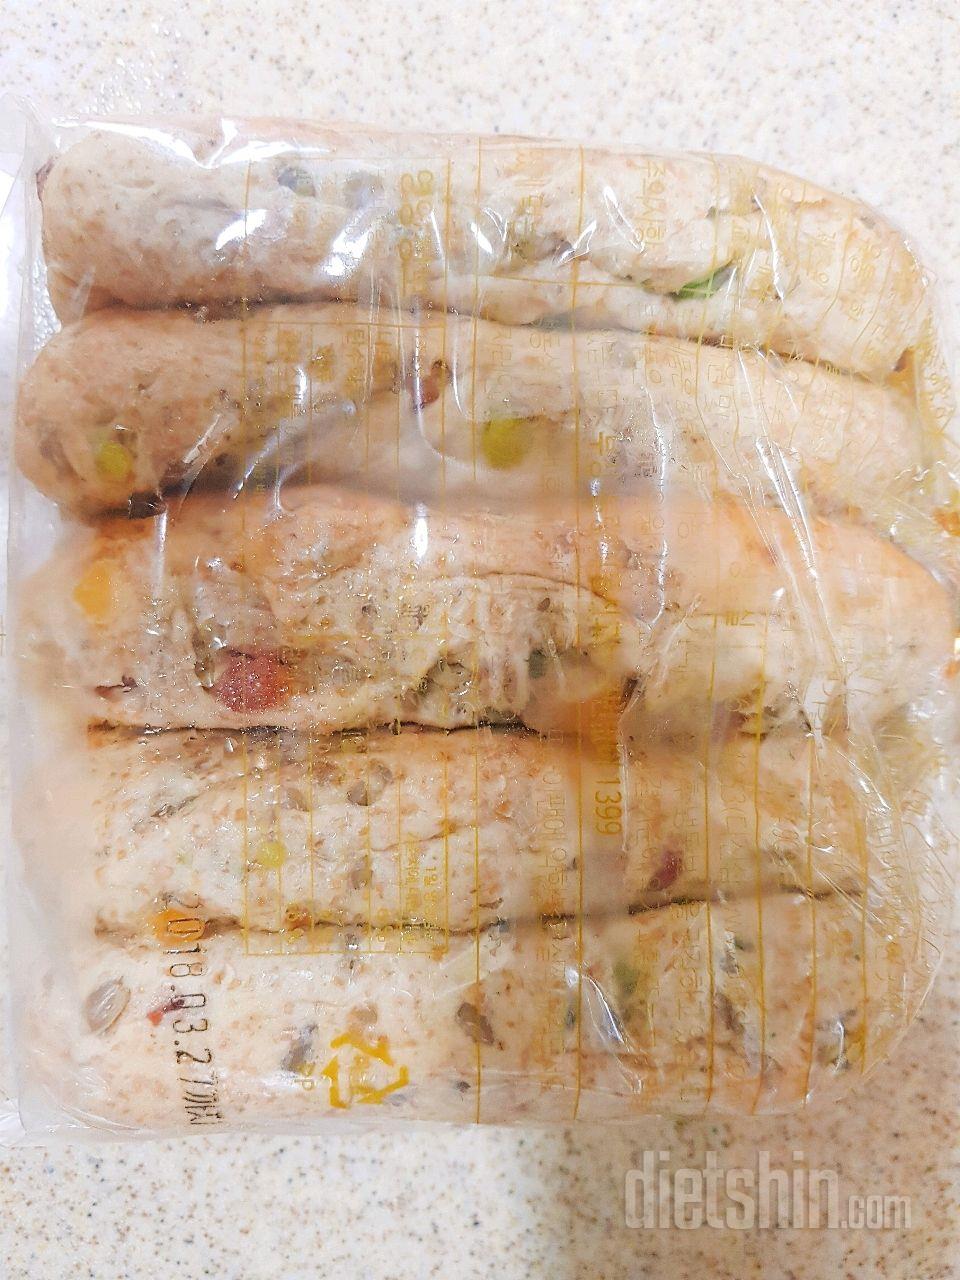 통밀당 견과스틱빵 후기 (마늘빵 만들기)